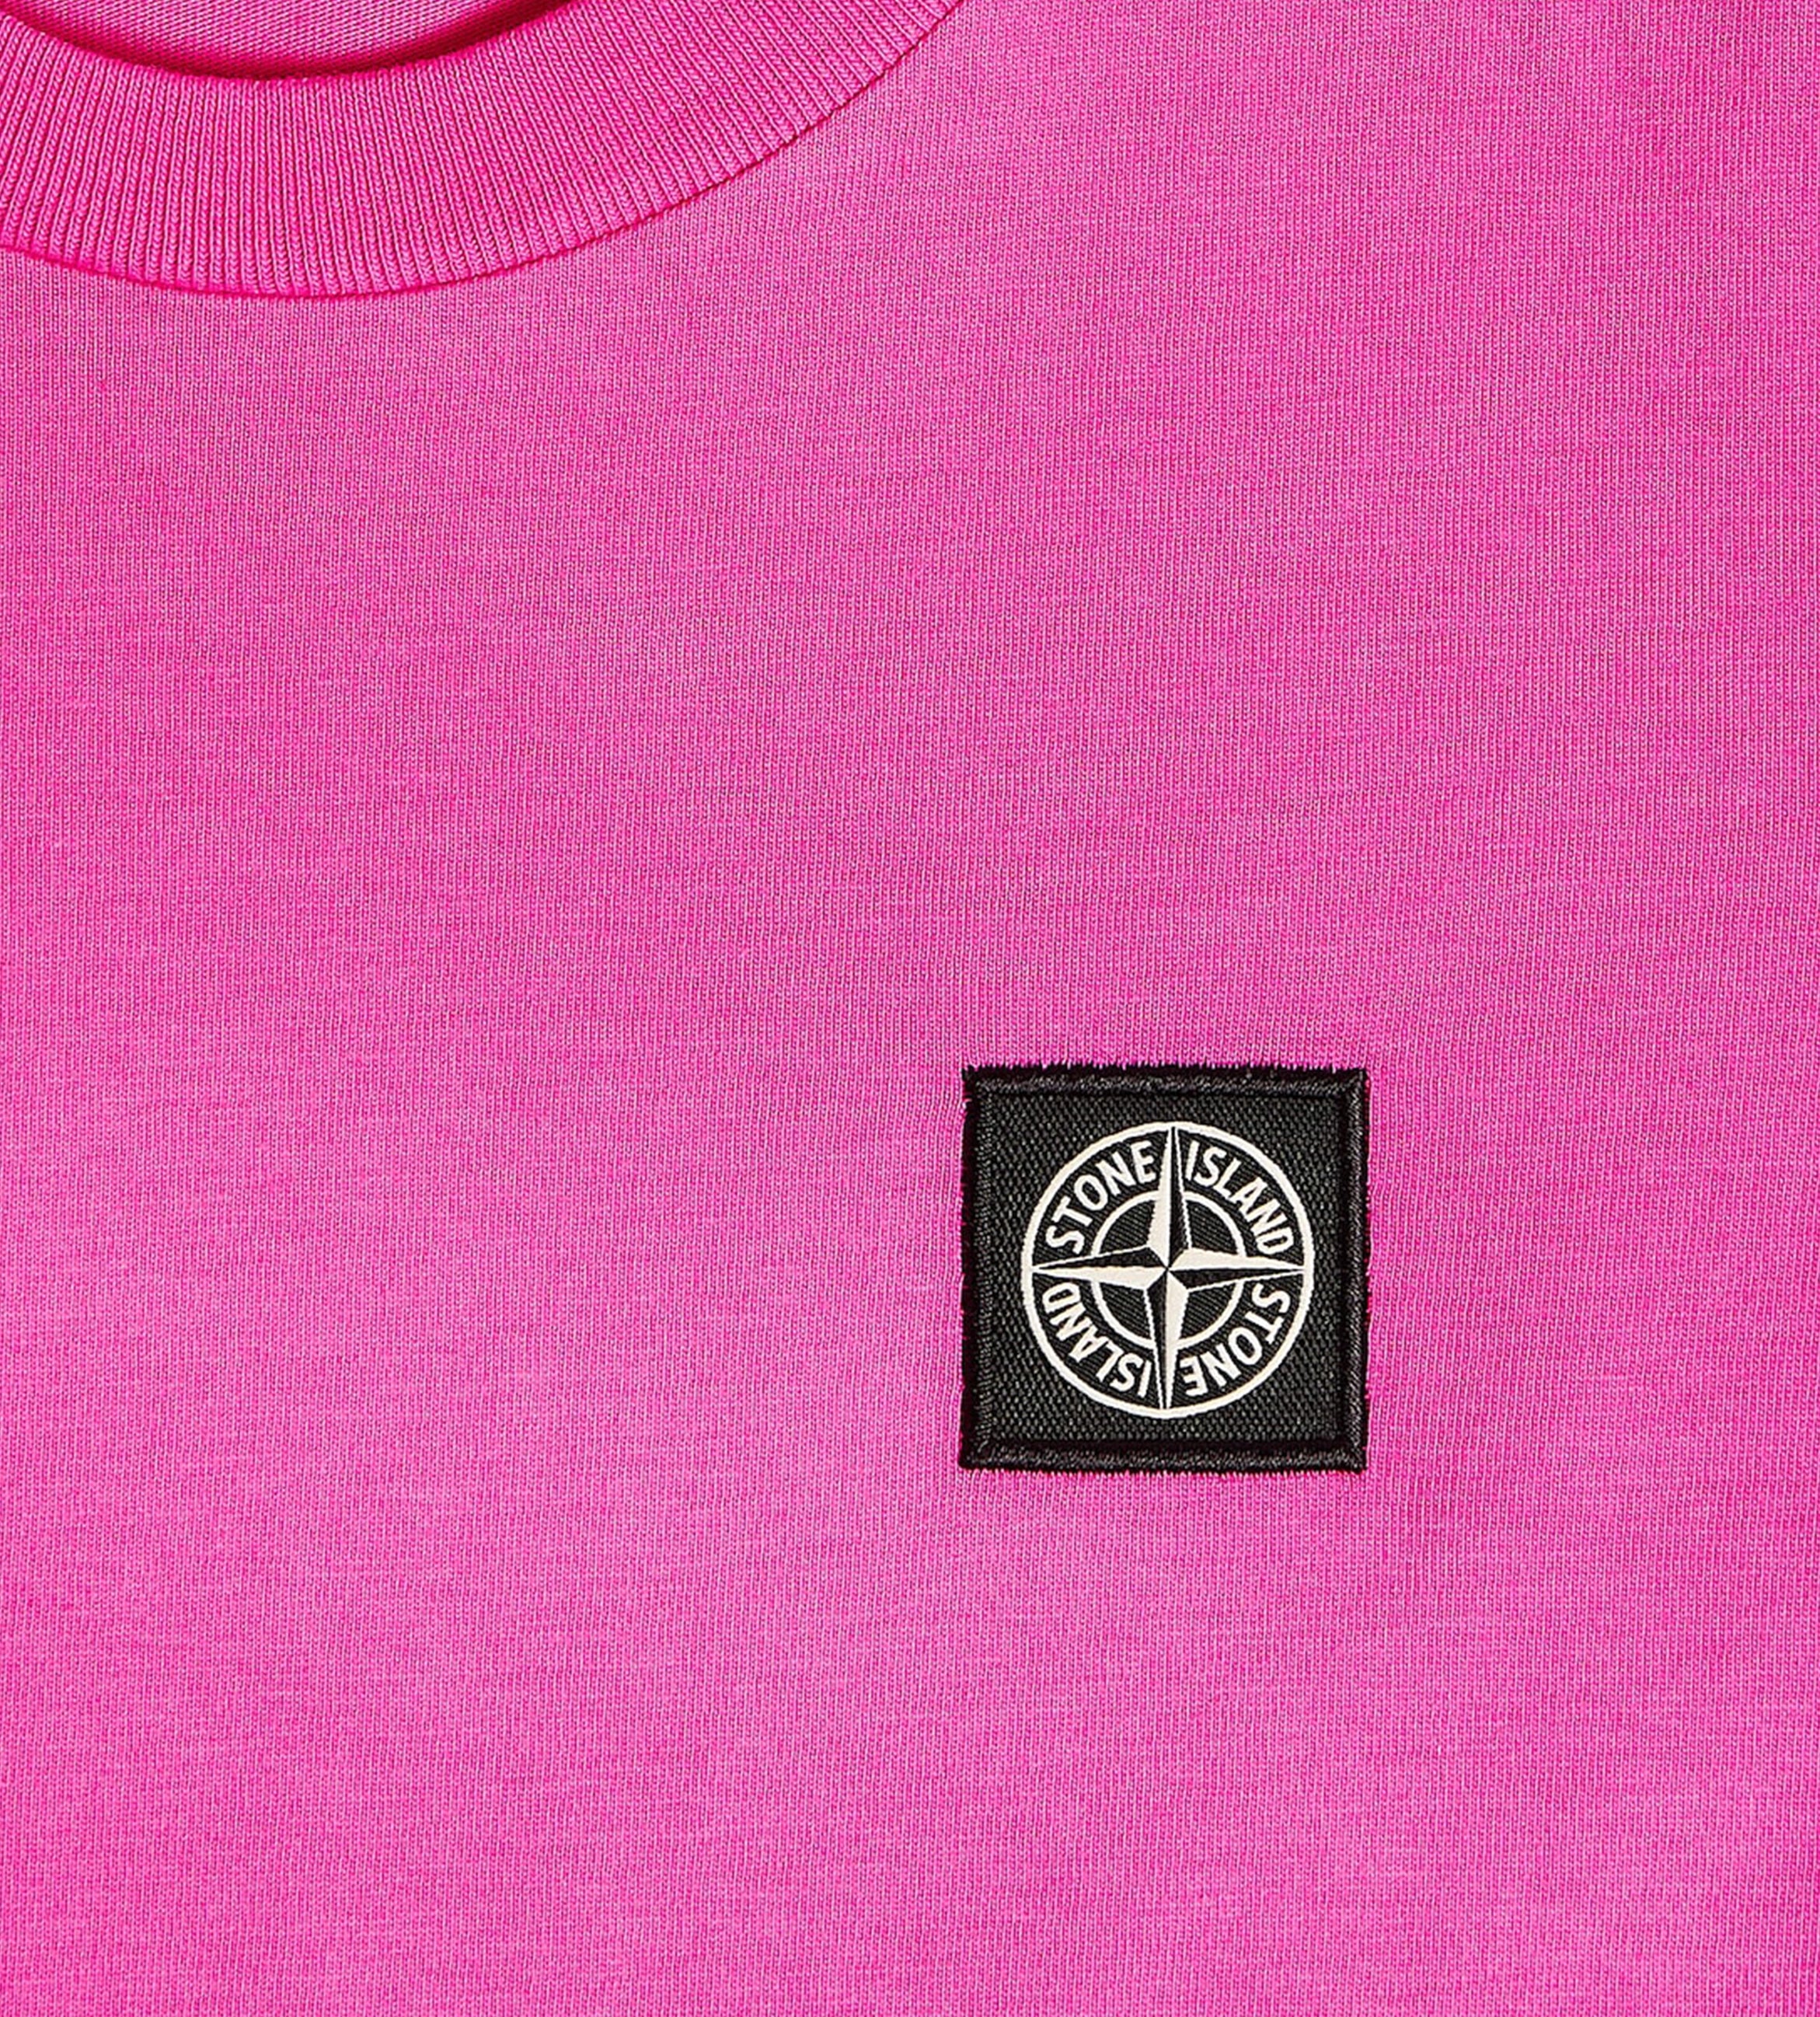 Compass-Patch T-shirt Fuchsia